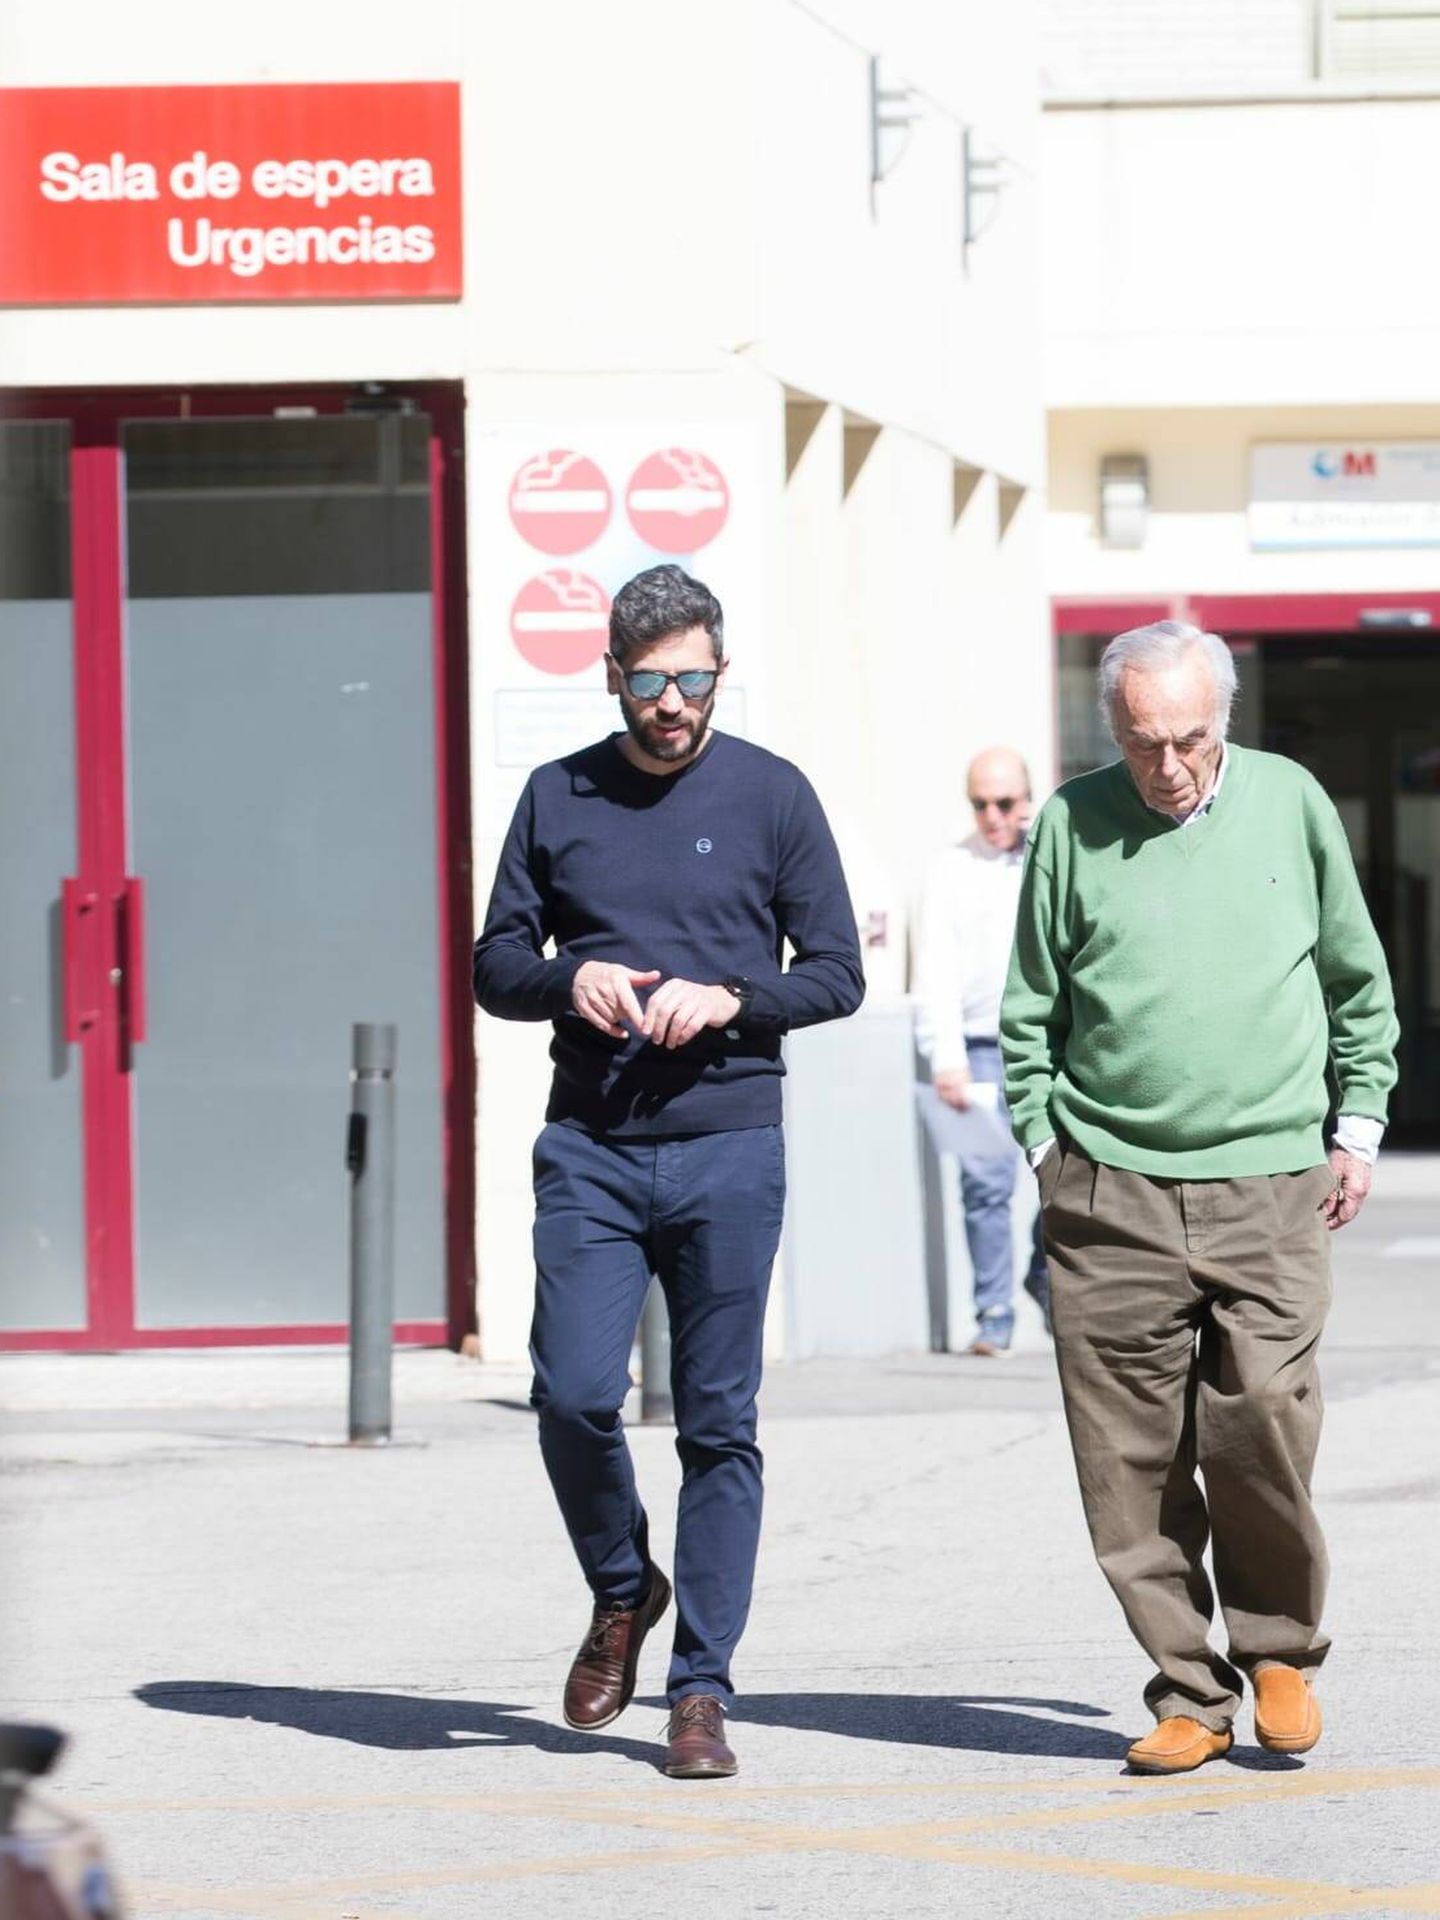 El doctor Zurita, acompañado de su hijo a la salida del hospital madrileño. (Vanitatis)